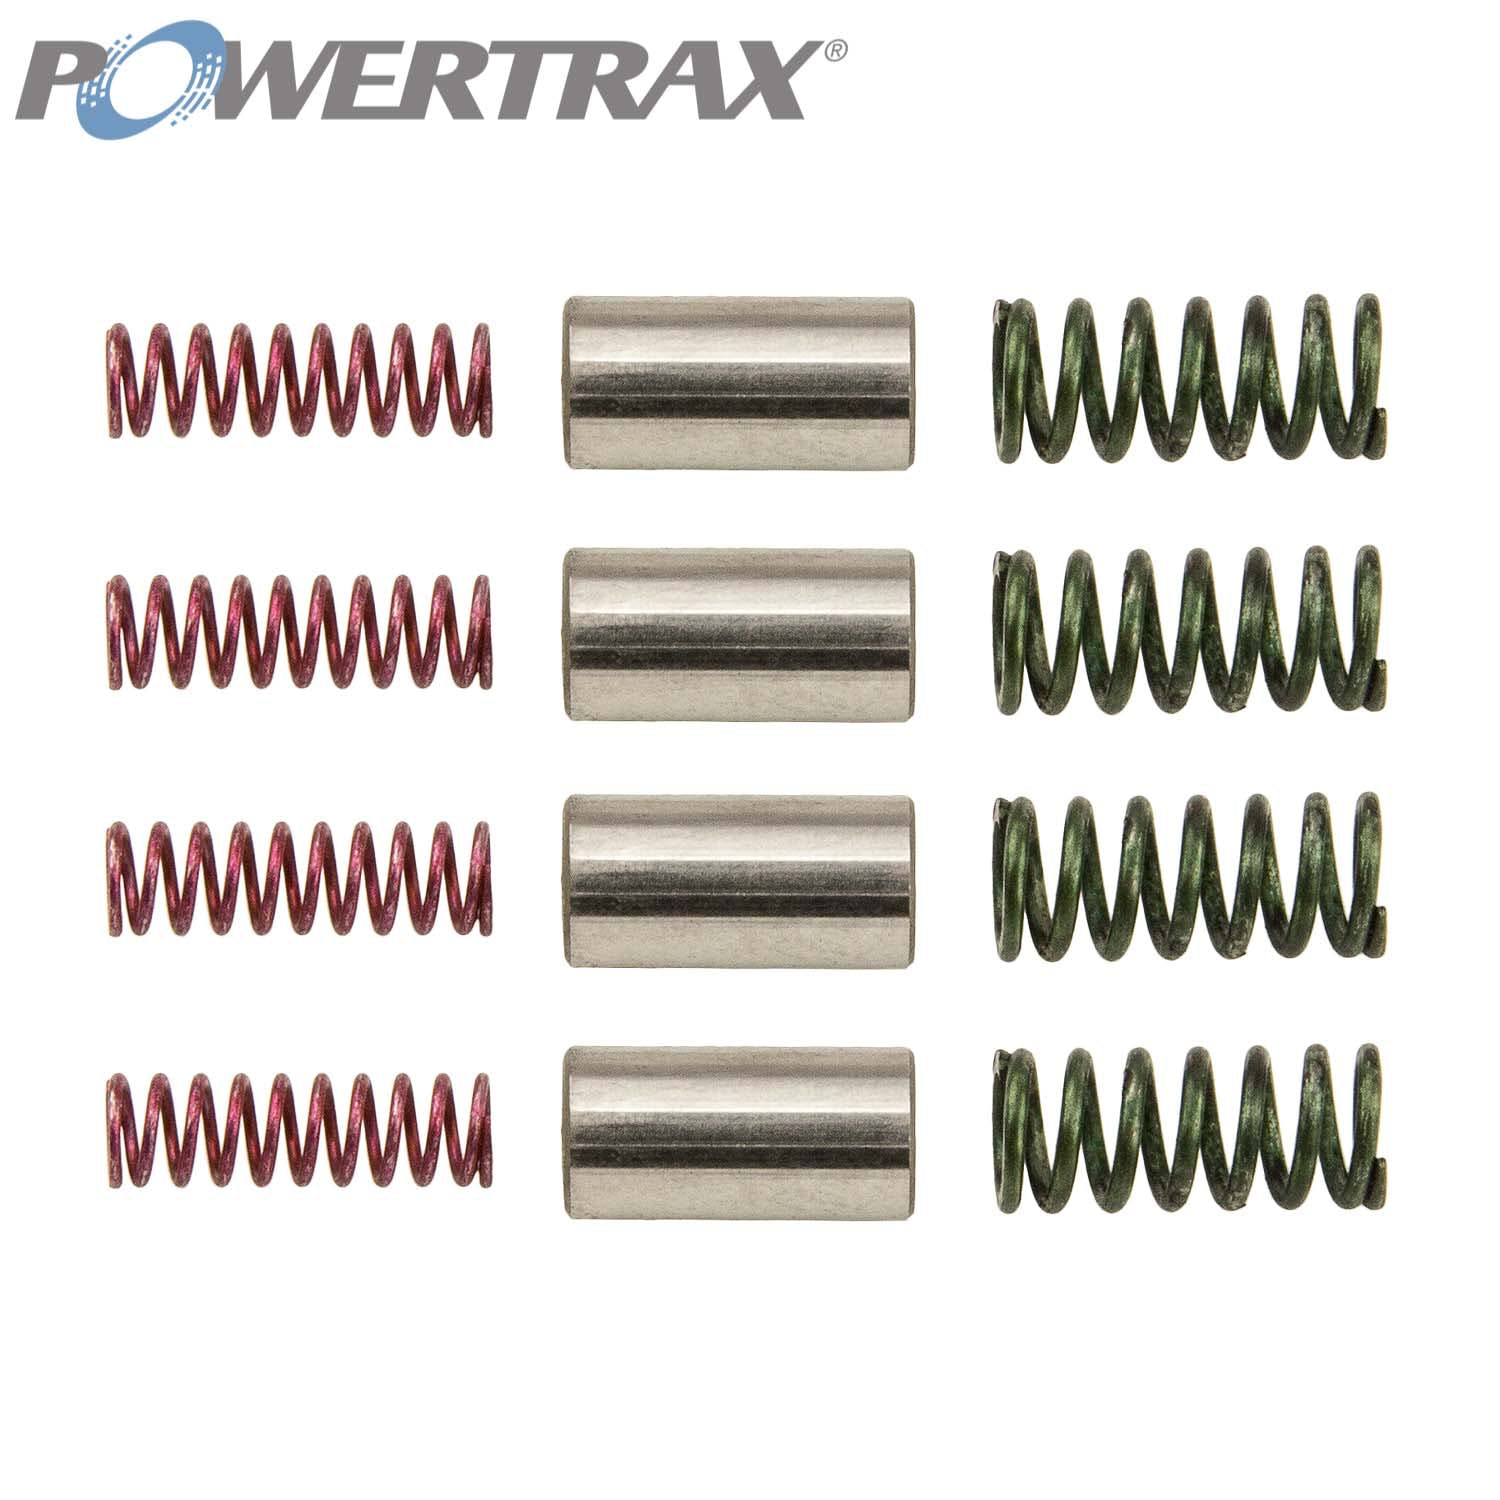 PowerTrax 1031350KAU Spring And Pin Kit